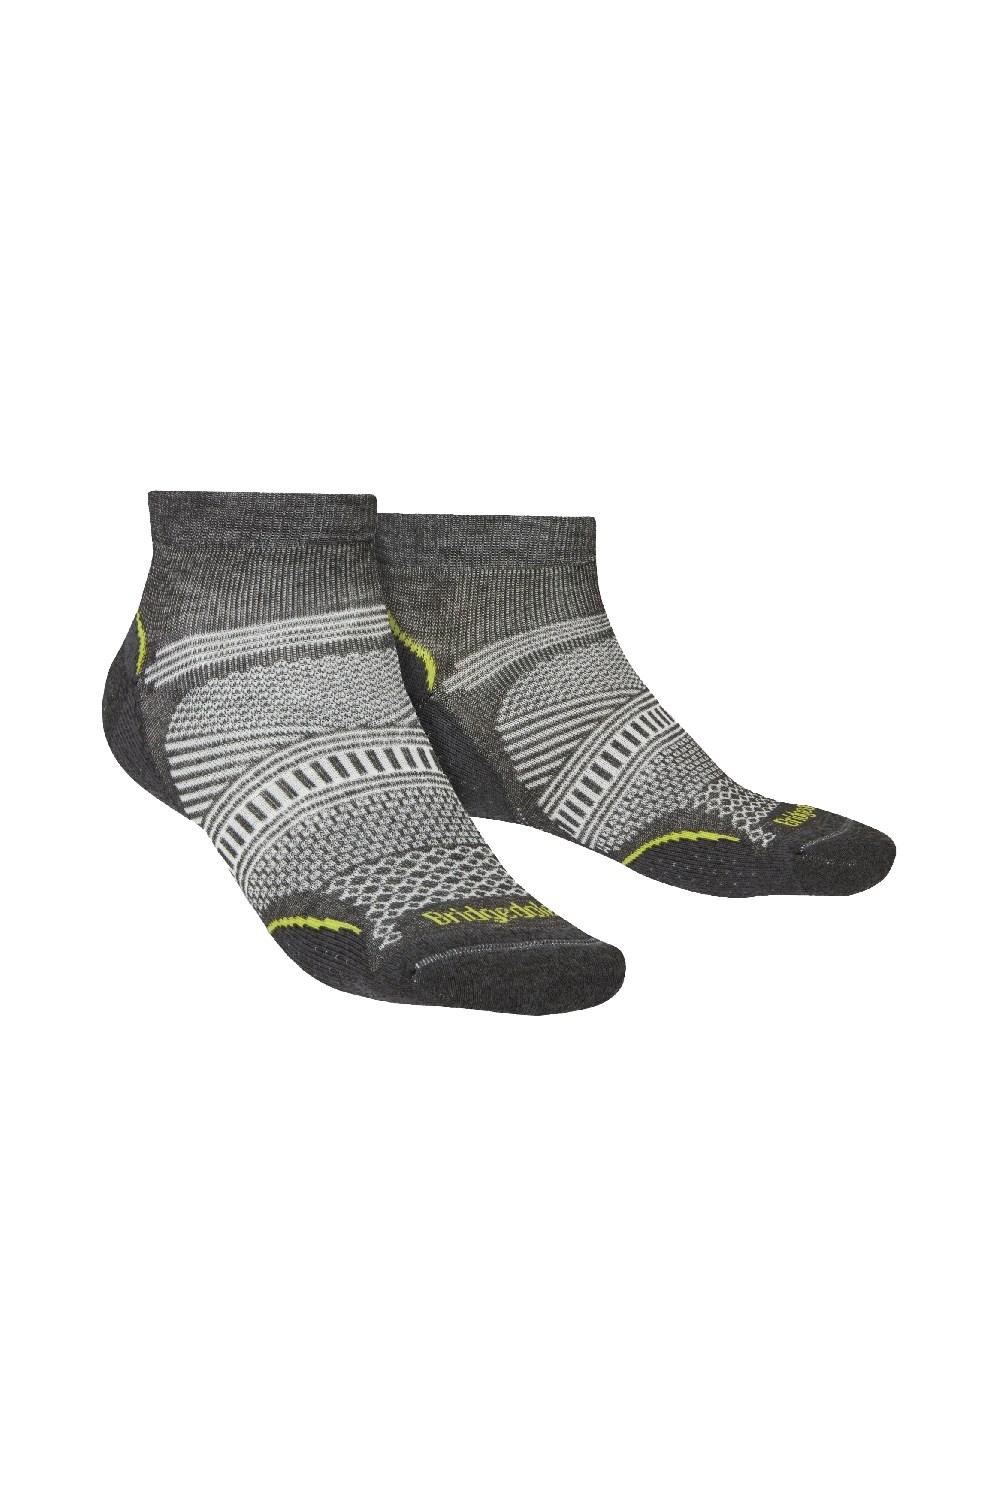 Mens Ultralight T2 Coolmax Low Hiking Socks -